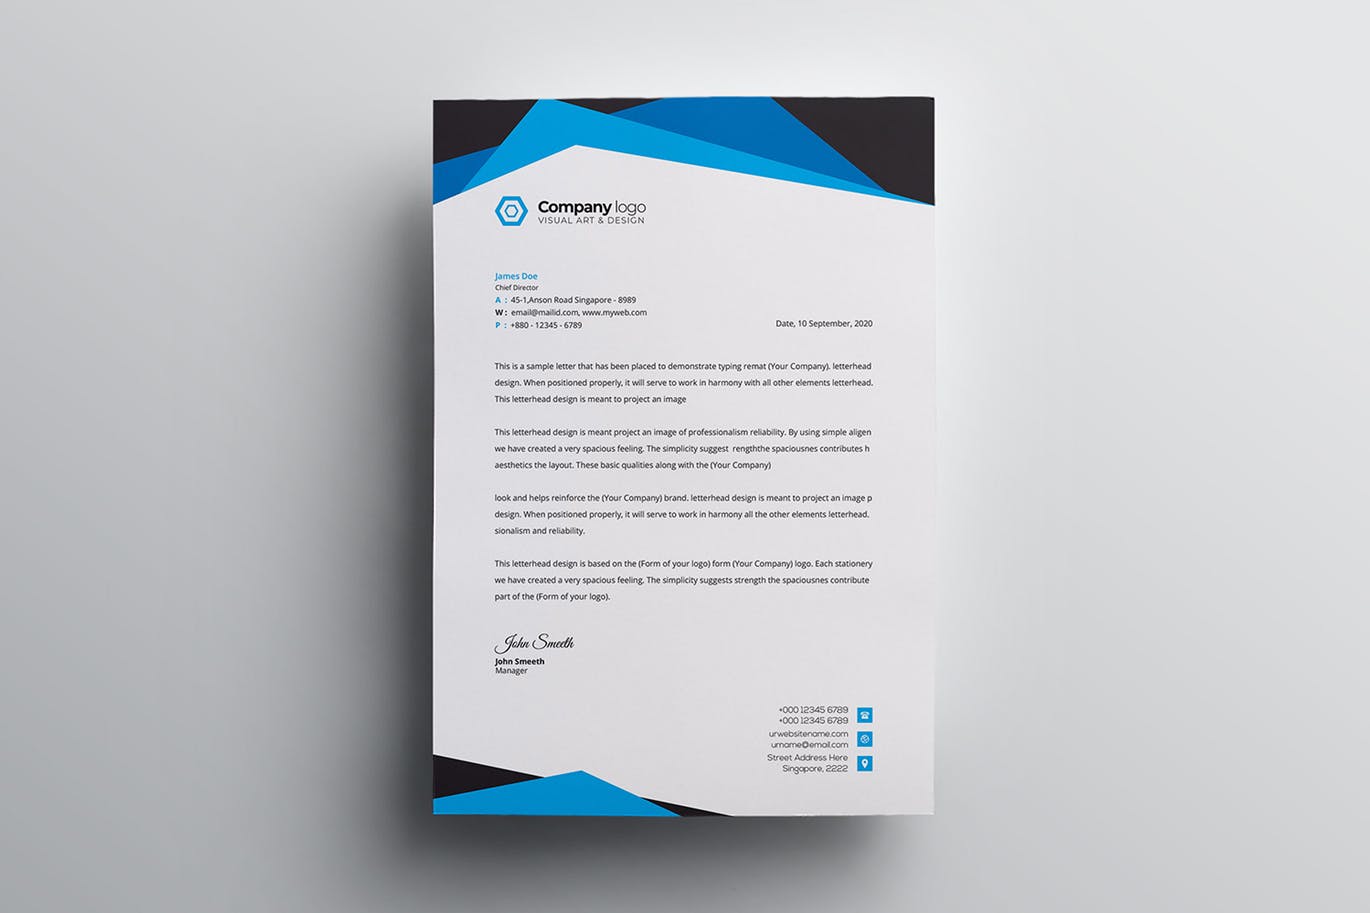 信息科技企业信封设计模板v2 Letterhead插图